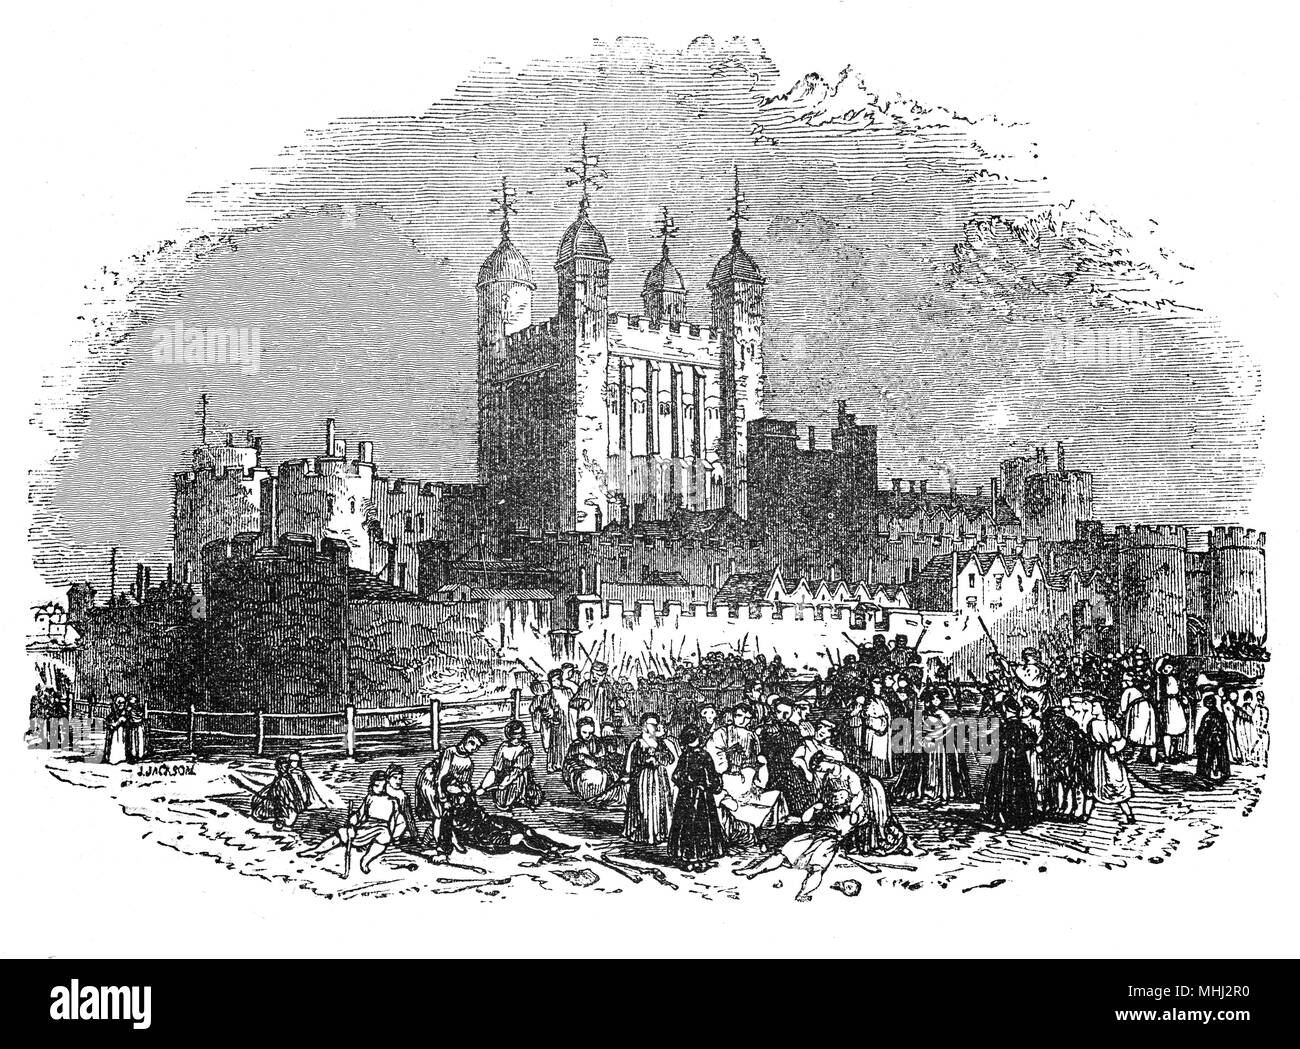 Der Tower von London, befindet sich auf dem Nordufer der Themse im Zentrum von London. und wurde Ende 1066 als Teil der Normannischen Eroberung Englands gegründet. Das Schloss wurde ab 1100 als Gefängnis genutzt, obwohl früh in seiner Geschichte, es als königliche Residenz diente. Hier im 15. Jahrhundert, der Turm ist ein Komplex von mehreren Gebäuden innerhalb von zwei konzentrischen Ringen von Mauern und einem Wassergraben. Es gab mehrere Phasen der Expansion, vor allem unter verschiedenen Könige im Laufe der Jahrhunderte, aber das allgemeine Layout vom Ende des 13. Jahrhunderts etabliert bleibt intakt. Stockfoto